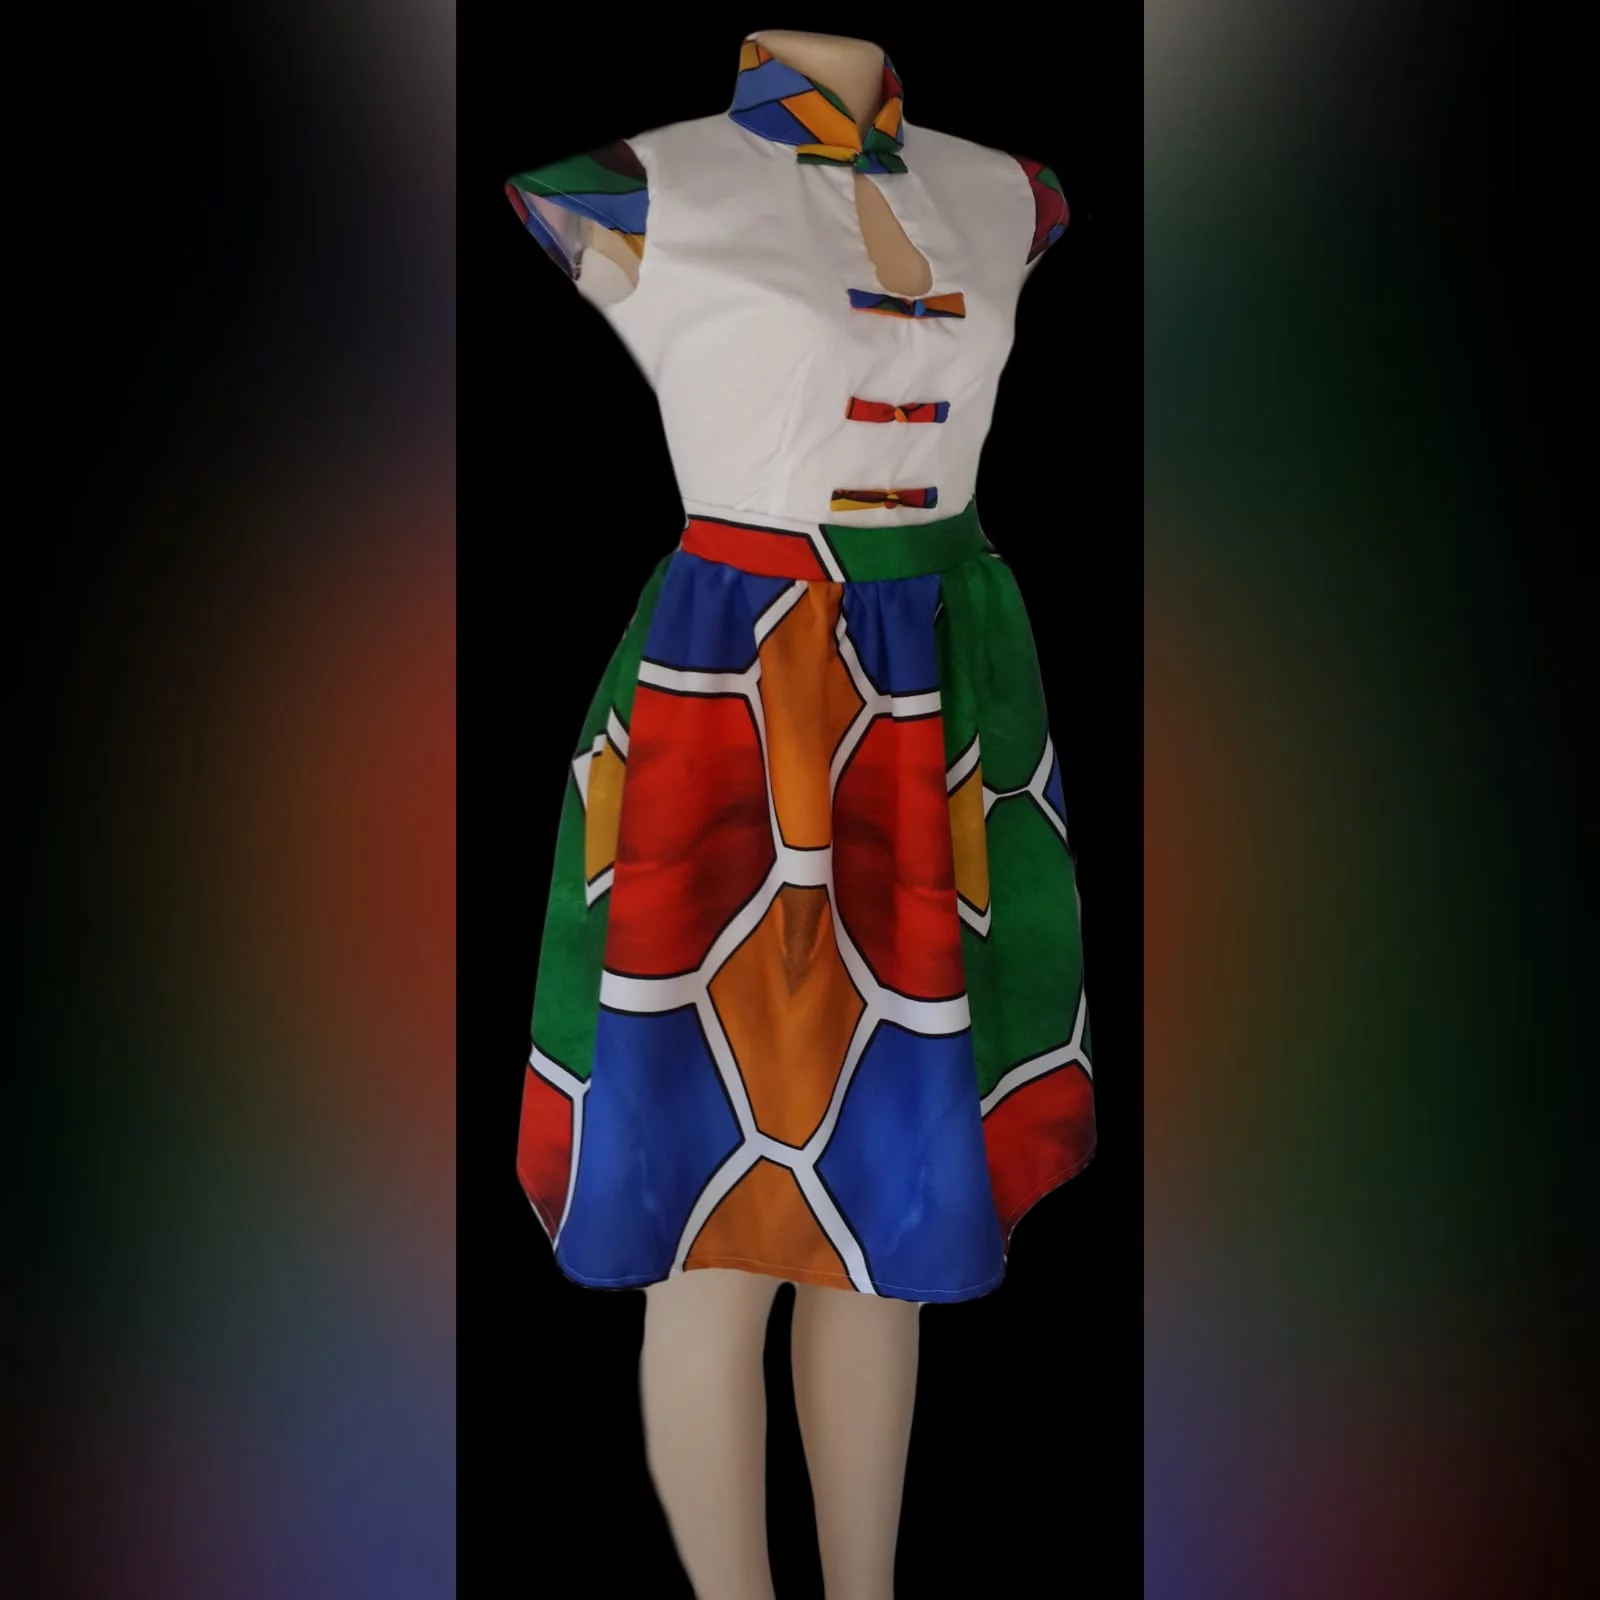 Vestido curto de tecido africano ndebele 1 vestido tradicional ndebele, corpete branco, colarinho chinês, mangas e detalhe de botões na impressão ndebele. Parte inferior do vestido em impressão ndebele completa.